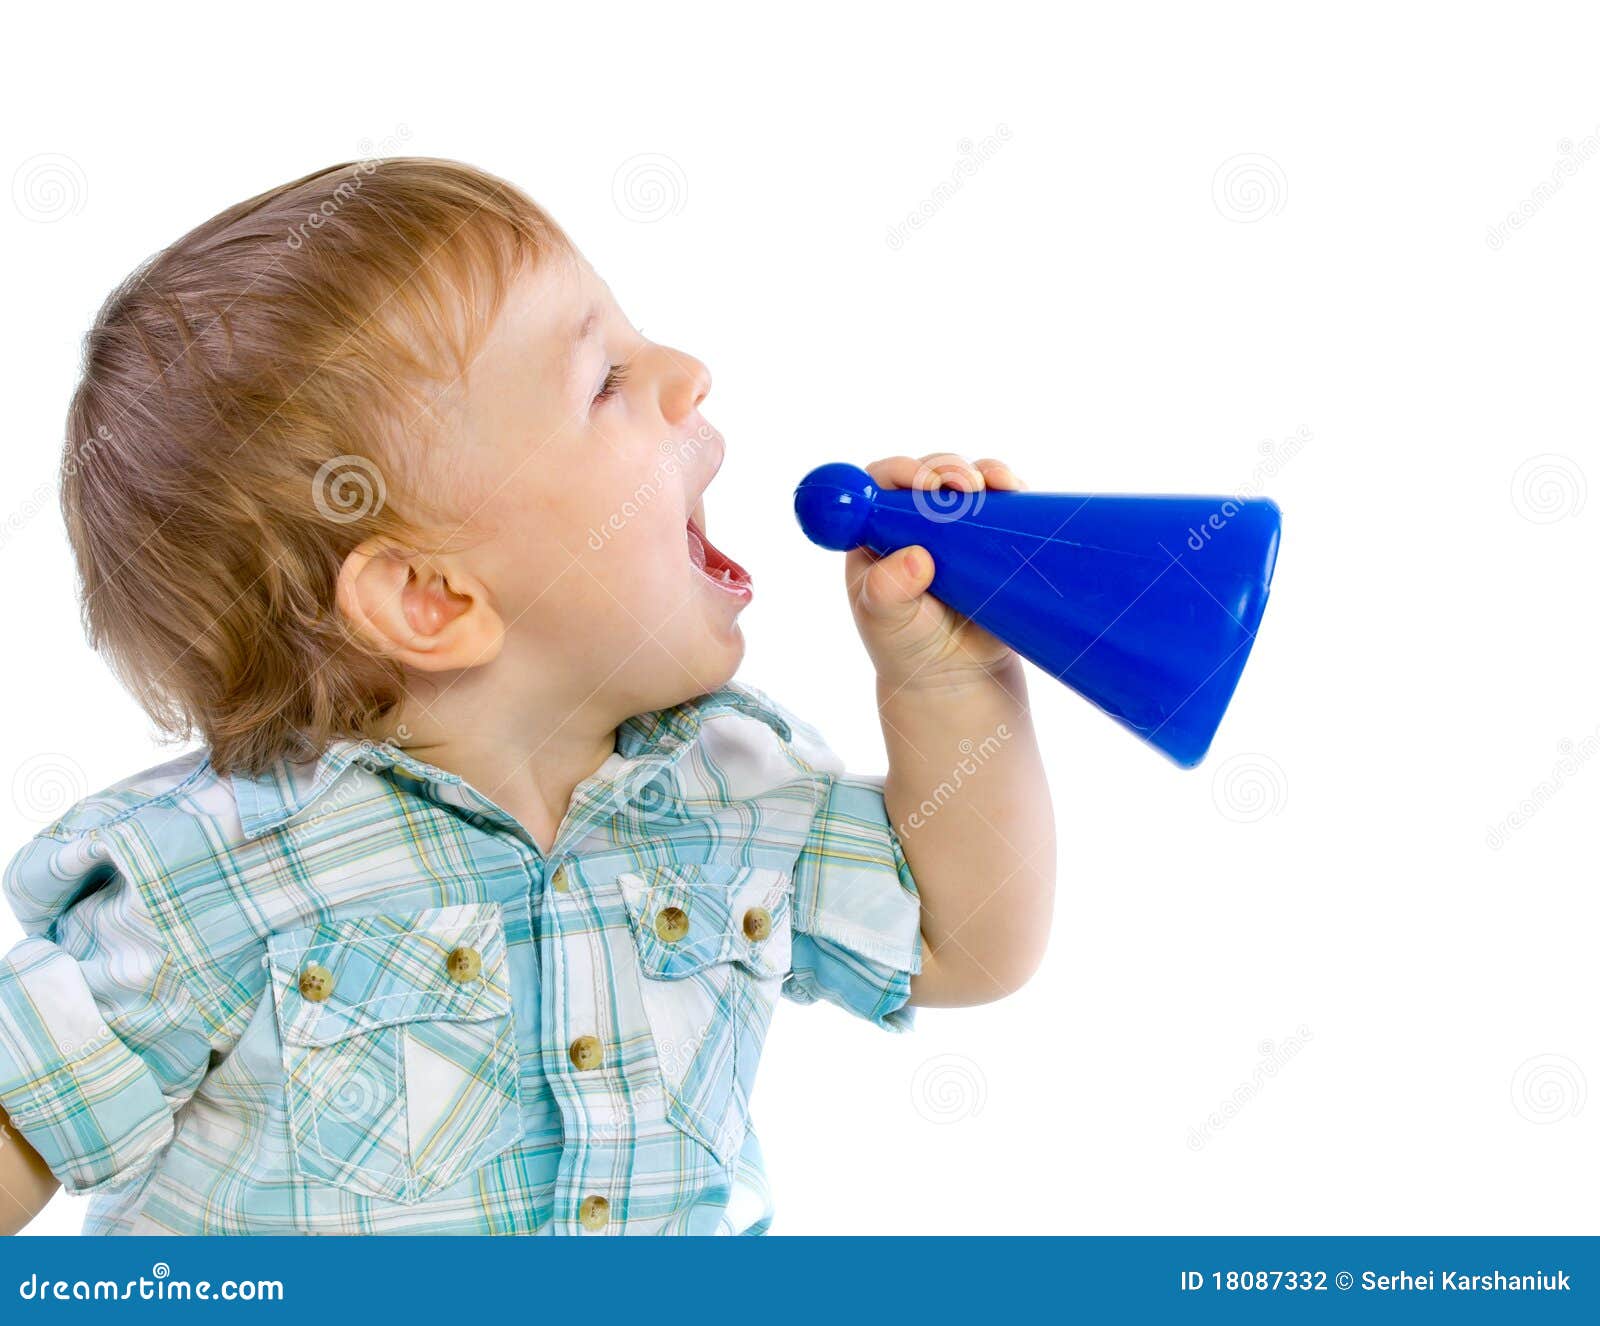 El bebé que grita a través de un juguete tiene gusto del megáfono, aislado